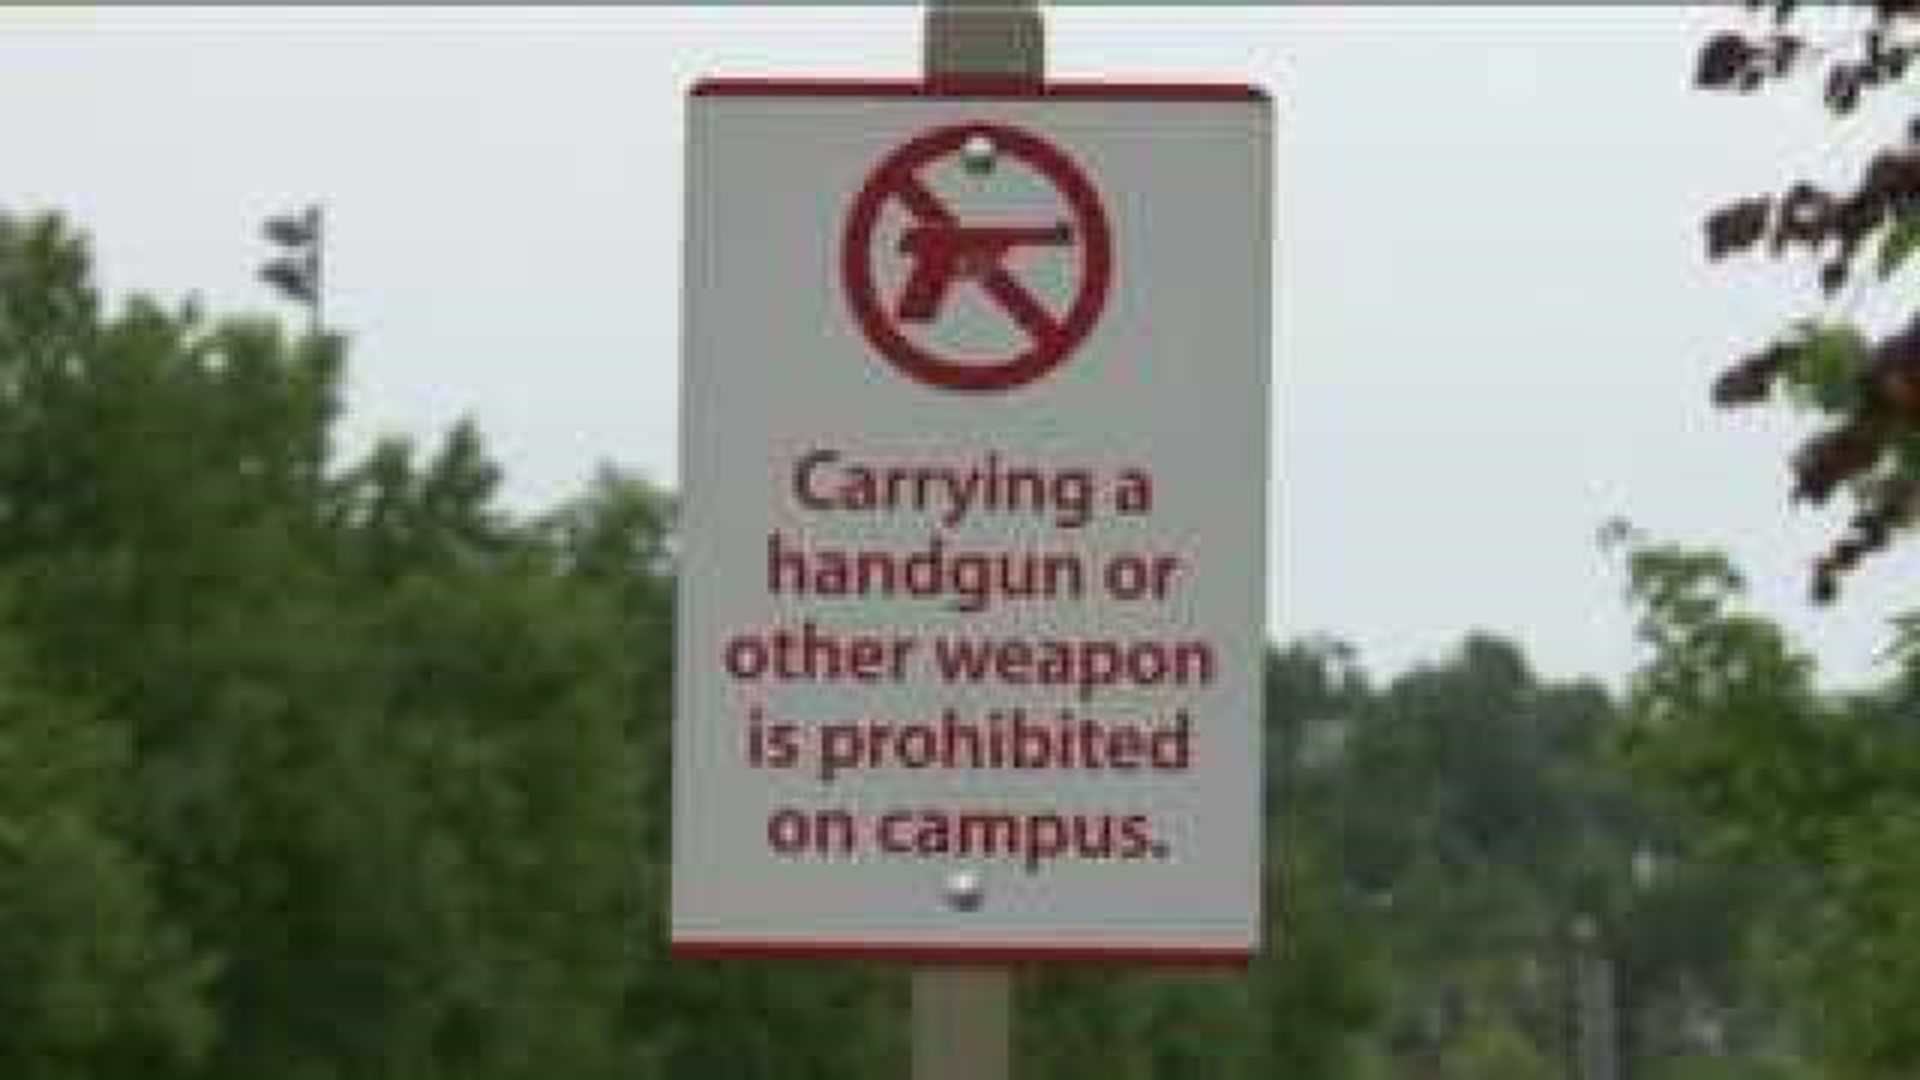 Representative Collins Discusses Campus Gun Law